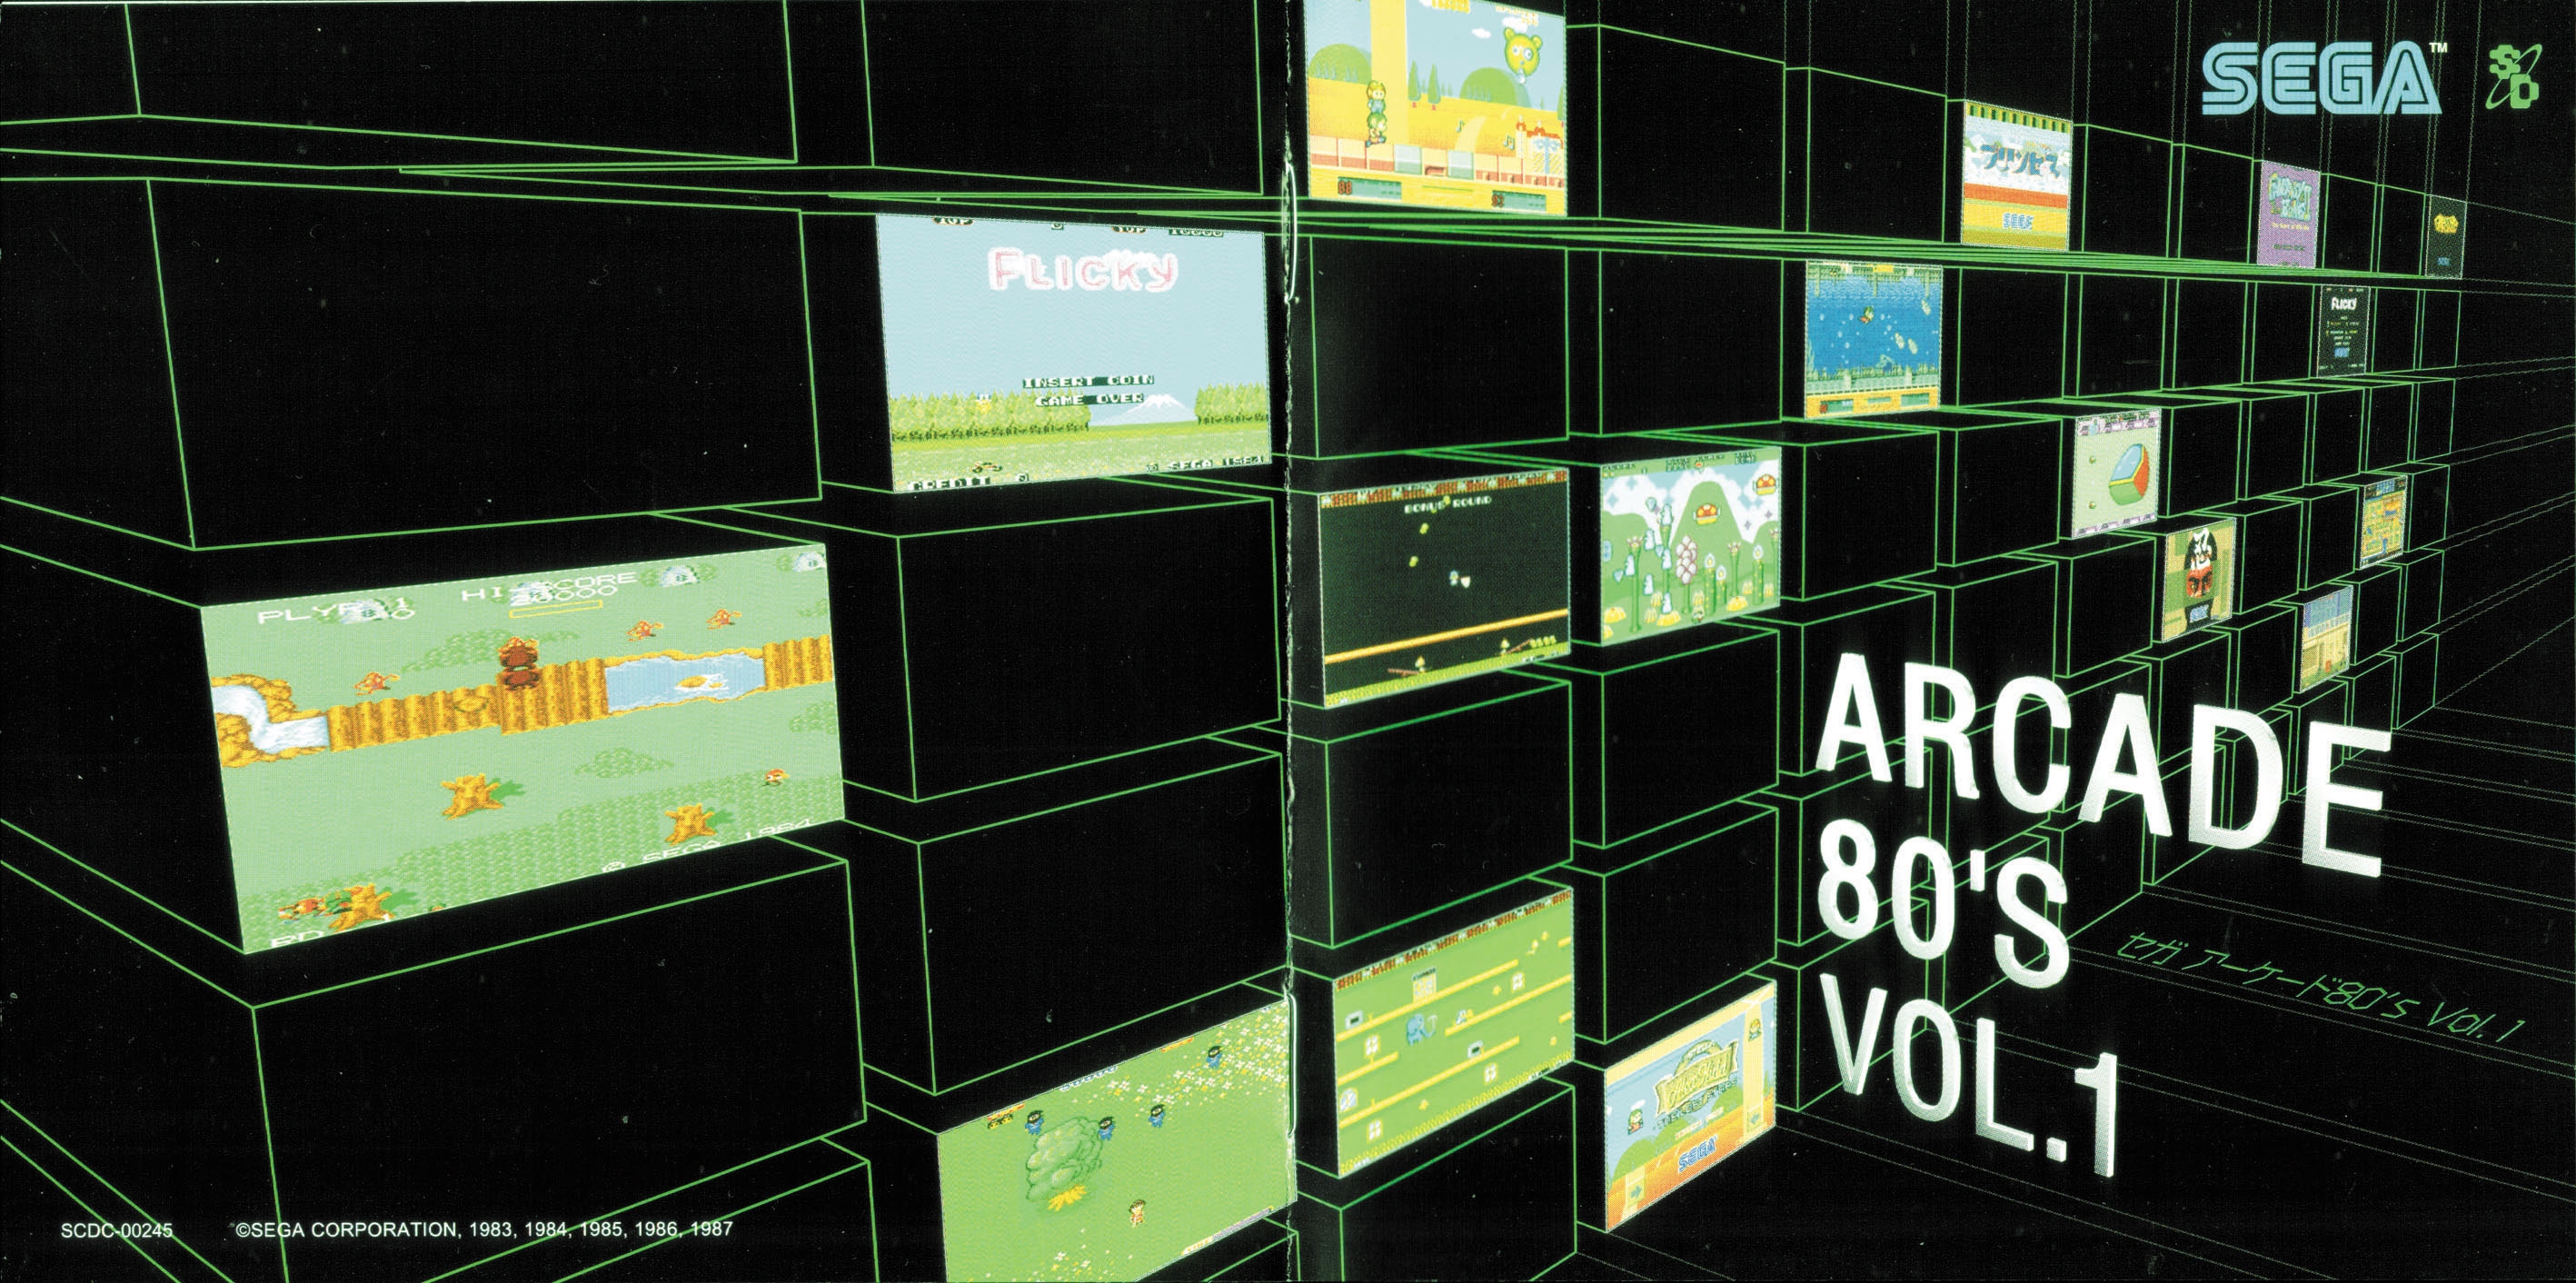 SEGA Arcade 80's Vol. 1 (2003) MP3 - Download SEGA Arcade 80's Vol. 1  (2003) Soundtracks for FREE!